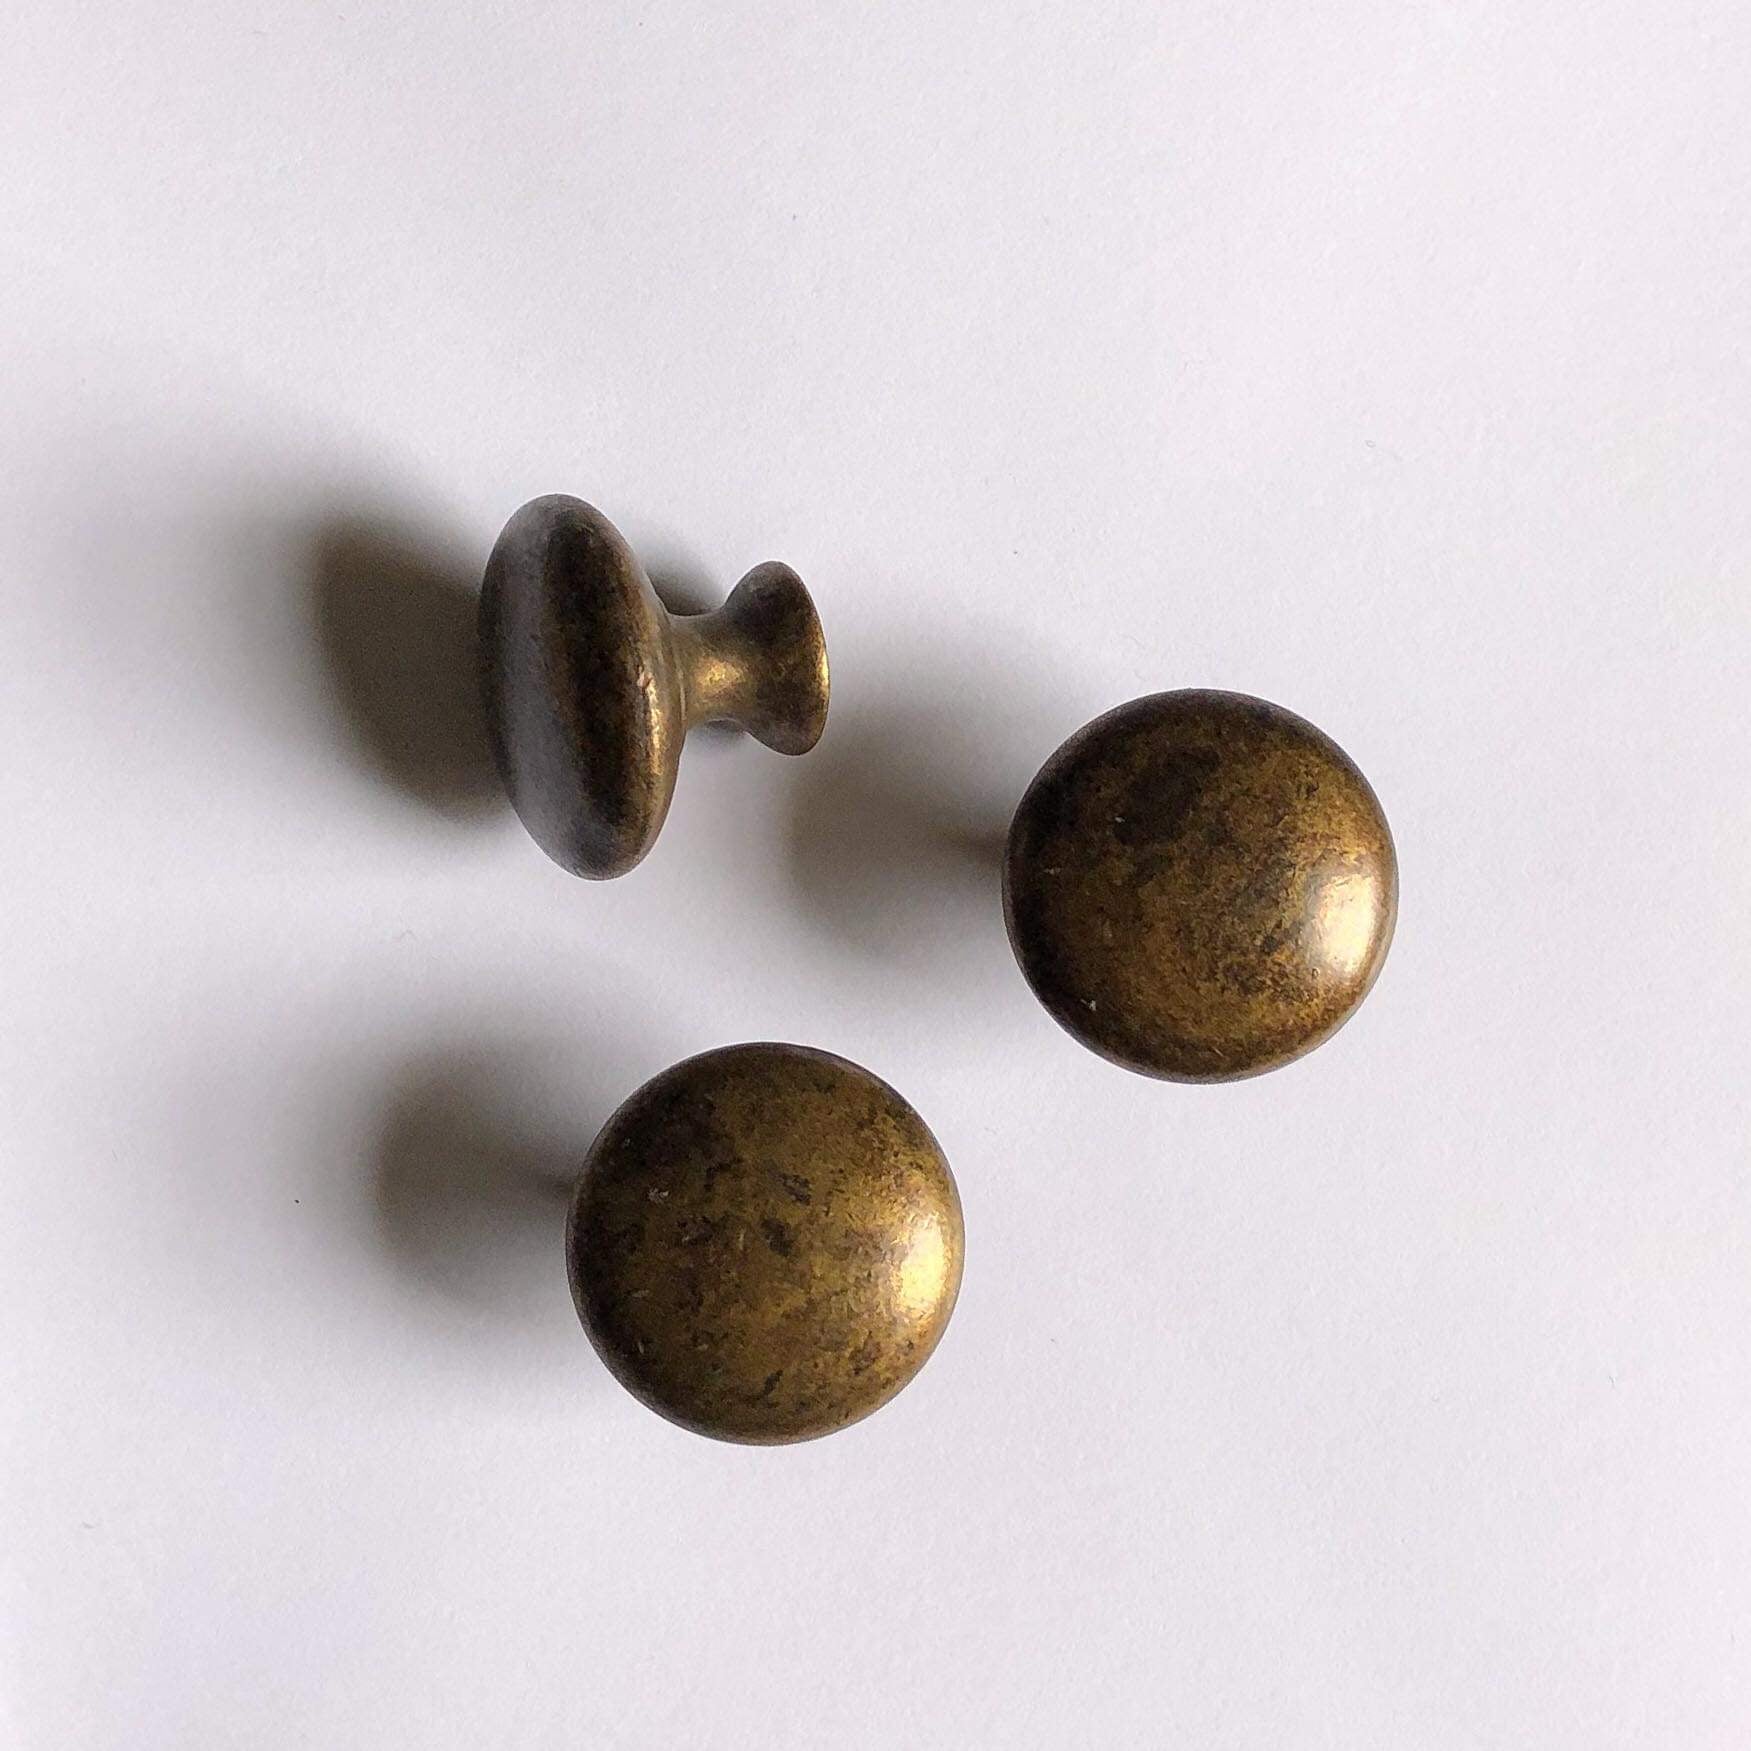 Aged Brass "Button" Cupboard Knob, 30mm